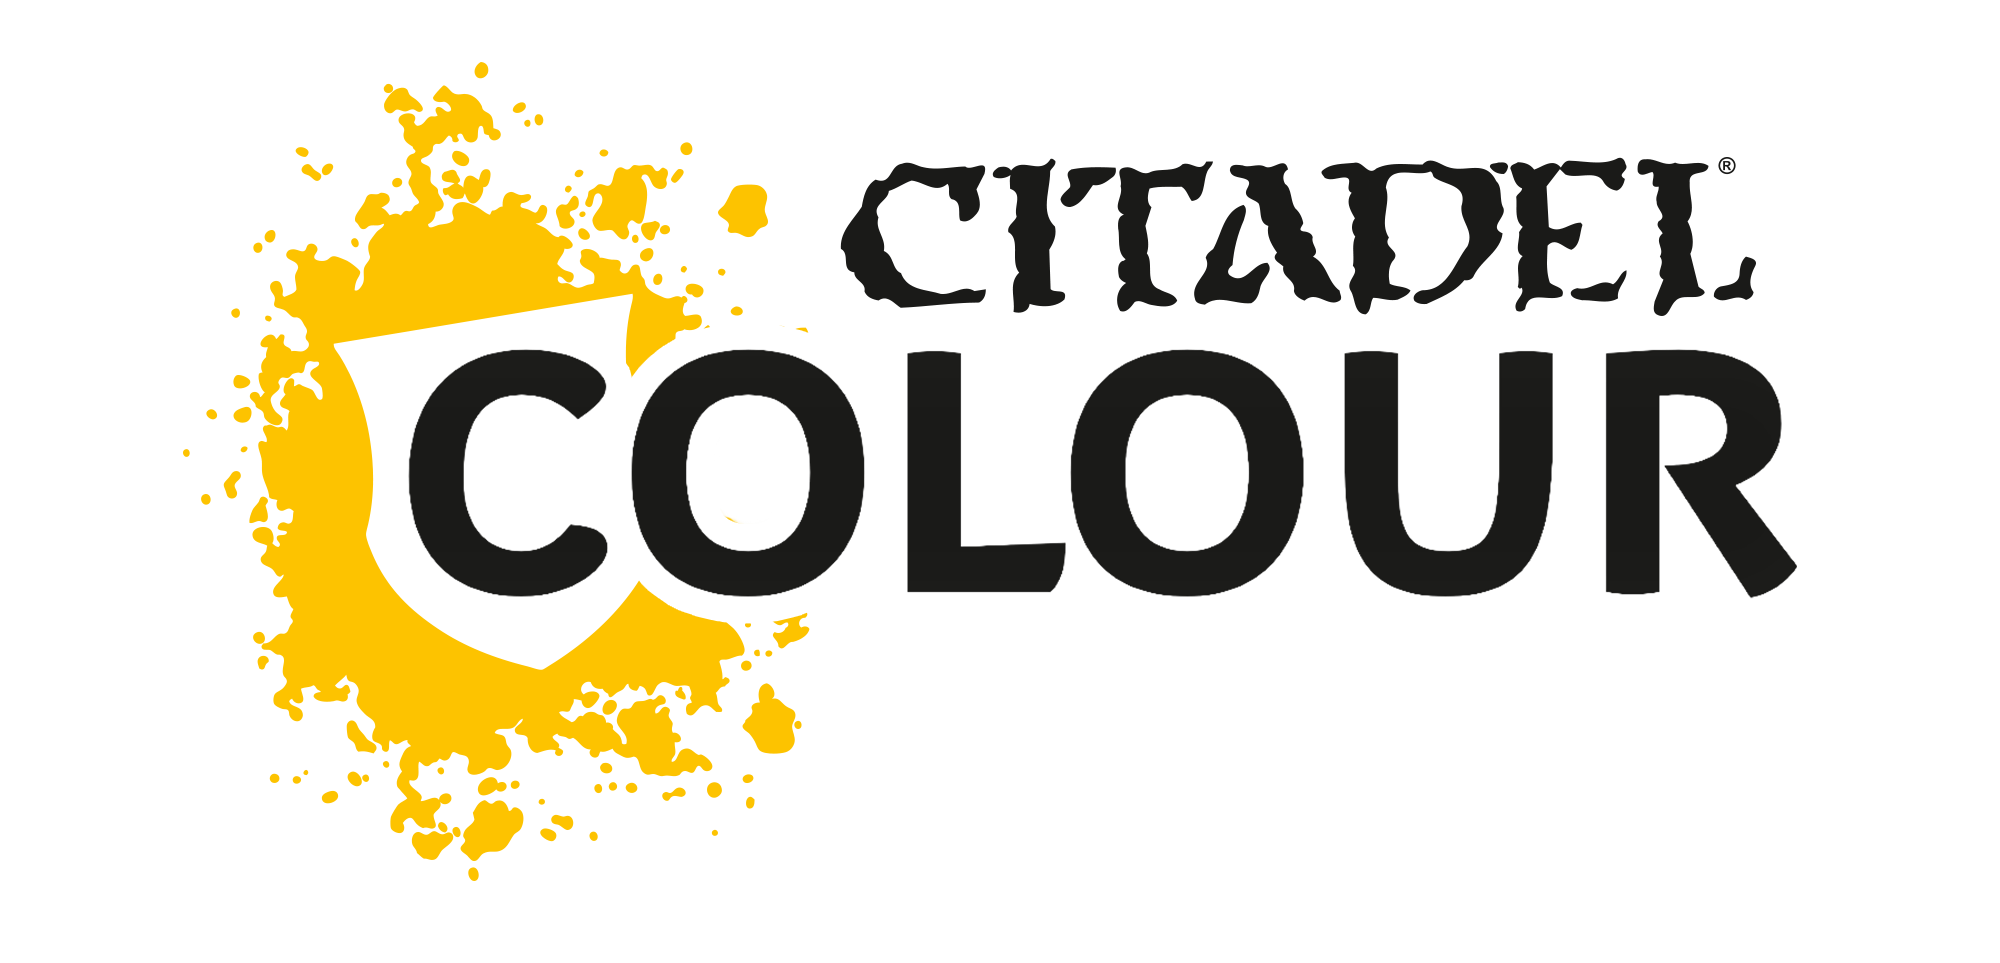 Citadel Colour Layer Paint Set (15 Paints) - Rekreation Games